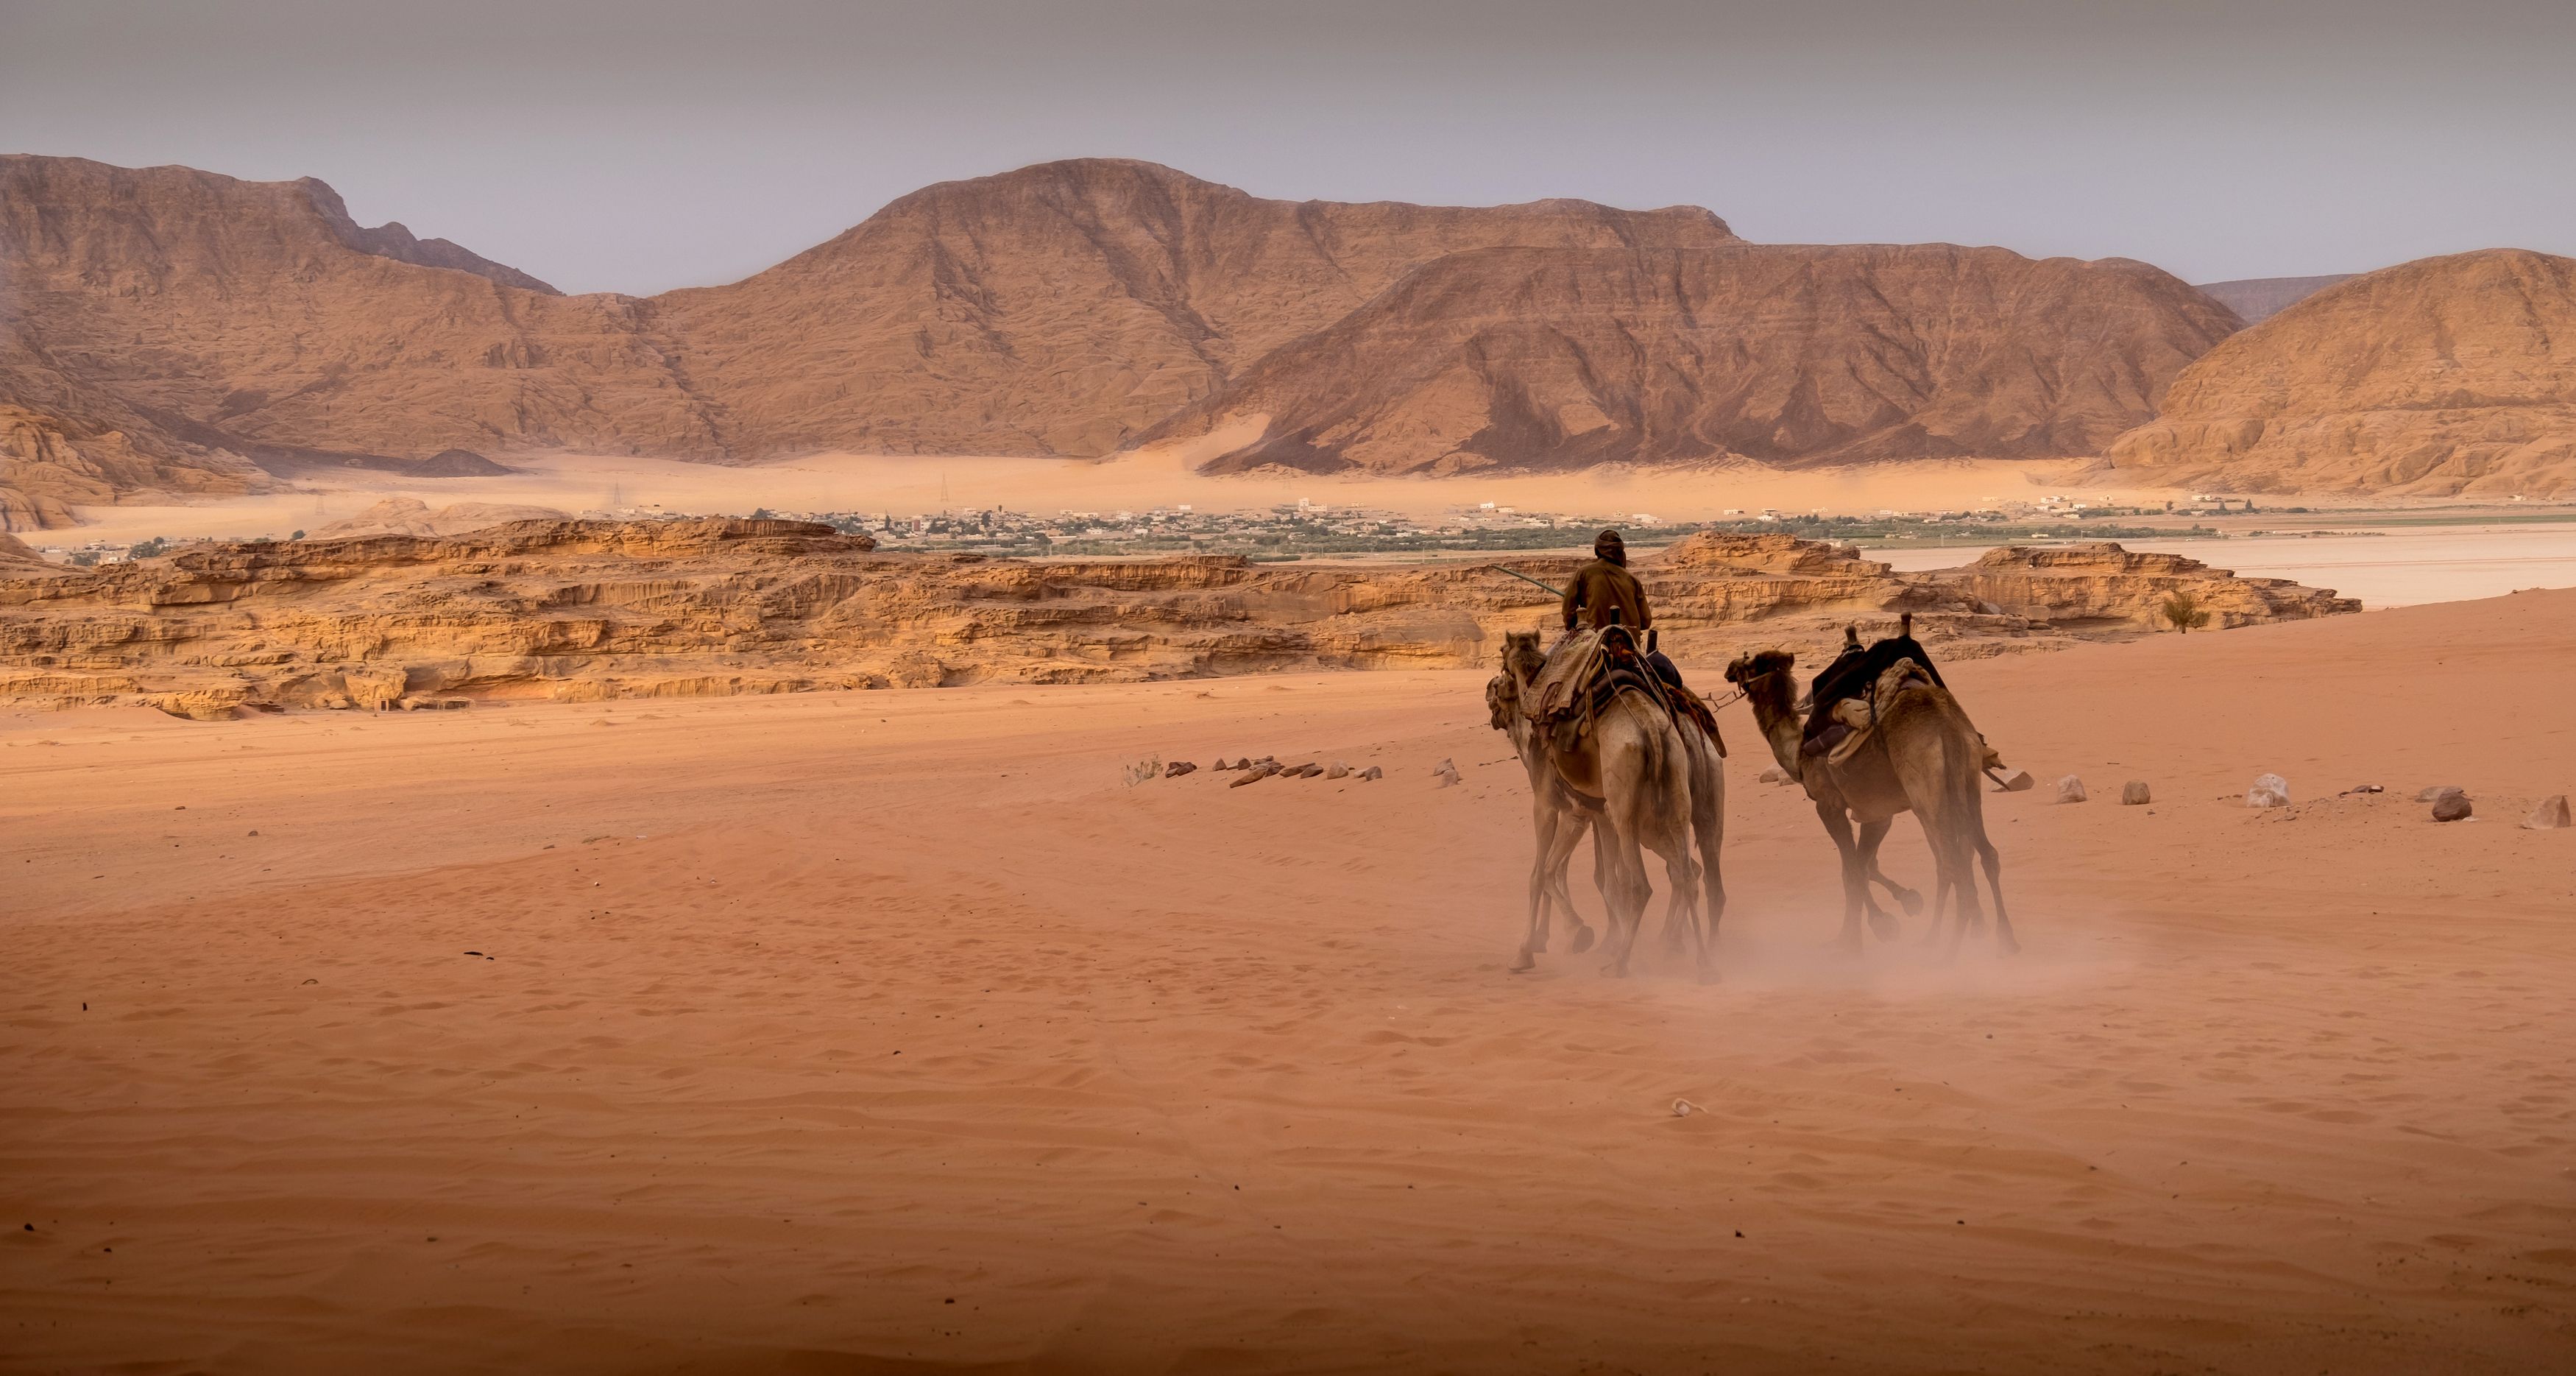 jordan, верблюд, wadi rum, desert, sand, rocks, нд, иордания, вади рам, пустыня, песок, скалы, ближний восток нд, ближний восток,  азия, Демкина Надежда